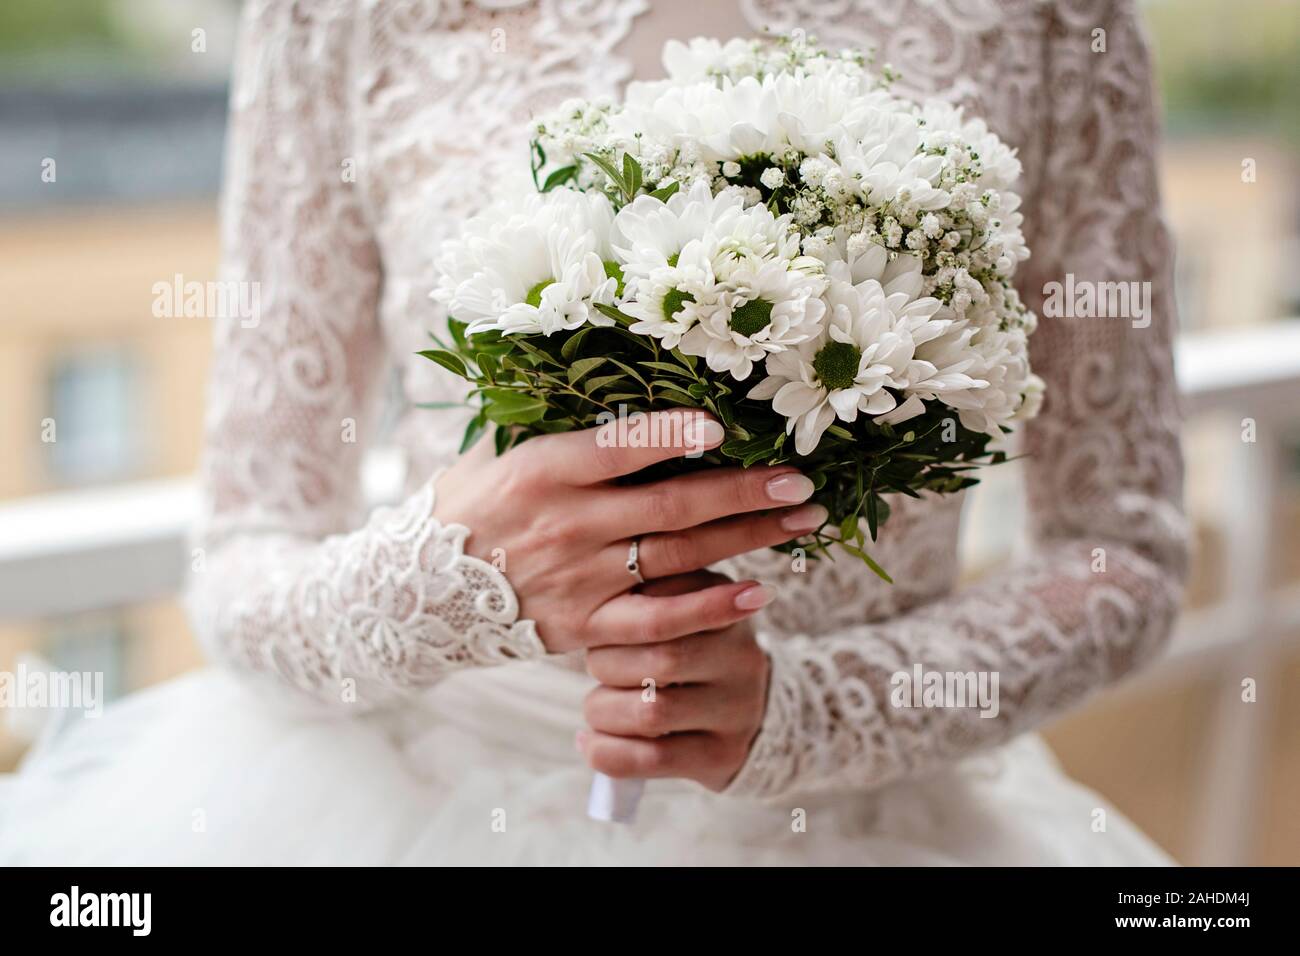 Mariée en dentelle blanche robe est la tenue des fleurs de mariage. Gros plan sur les mains de la mariée le port de bague de fiançailles et holding white bouquet de fleurs. Banque D'Images